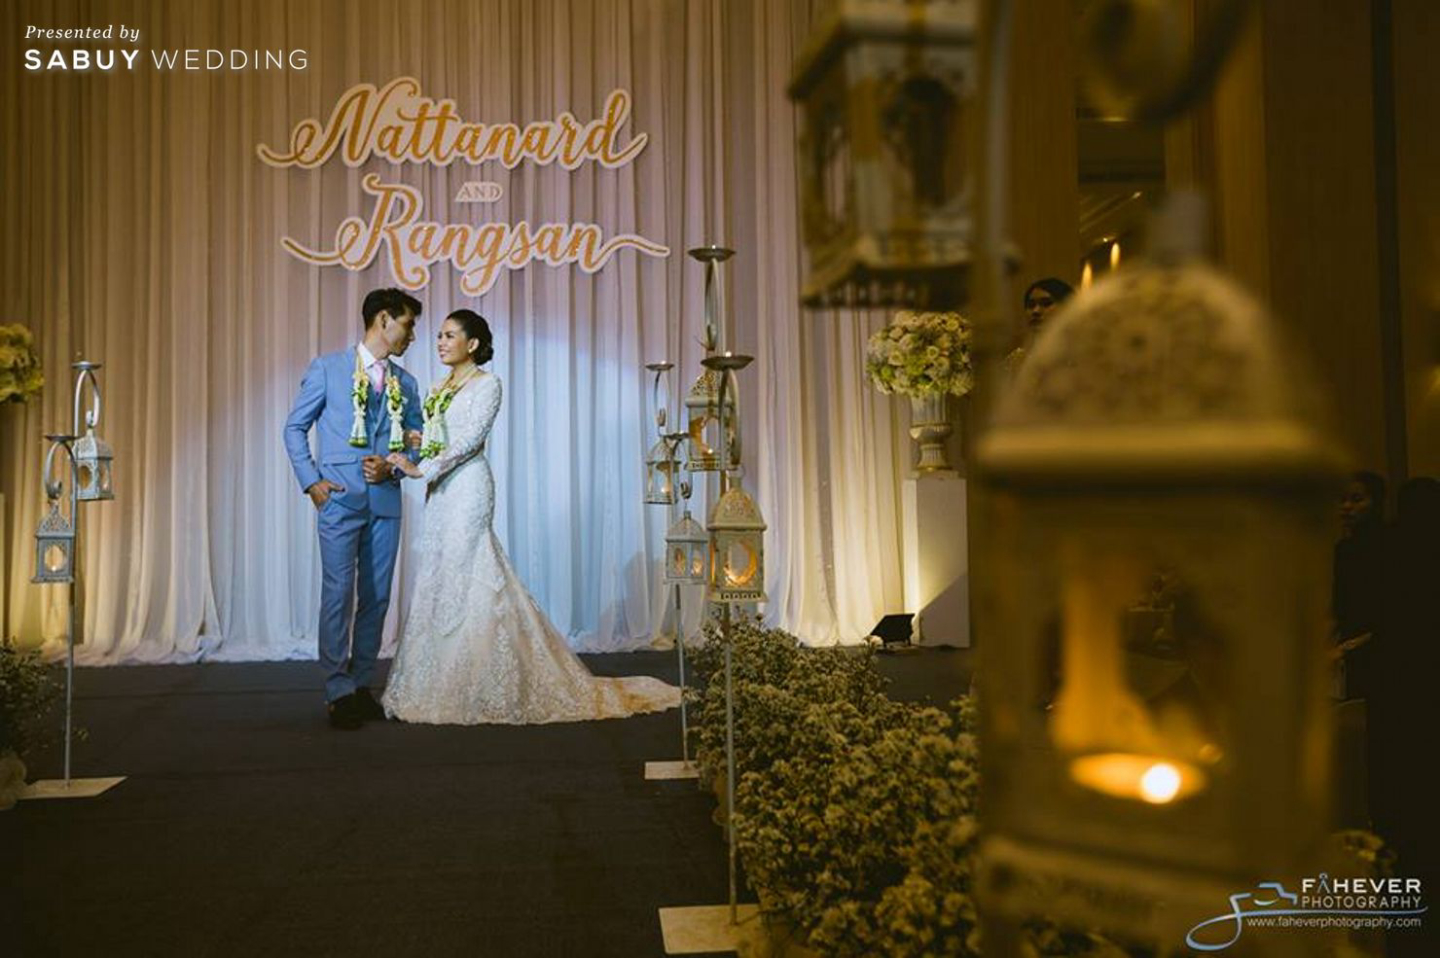 งานแต่งงาน,สถานที่แต่งงาน,สถานที่จัดงานแต่งงาน,โรงแรม,Fahever Photography,Swissotel Le Concorde Bangkok,บ่าวสาว MC Beam by Fahever กับงานแต่งสุดประทับใจ แขกทุกวัยเป็นปลื้ม